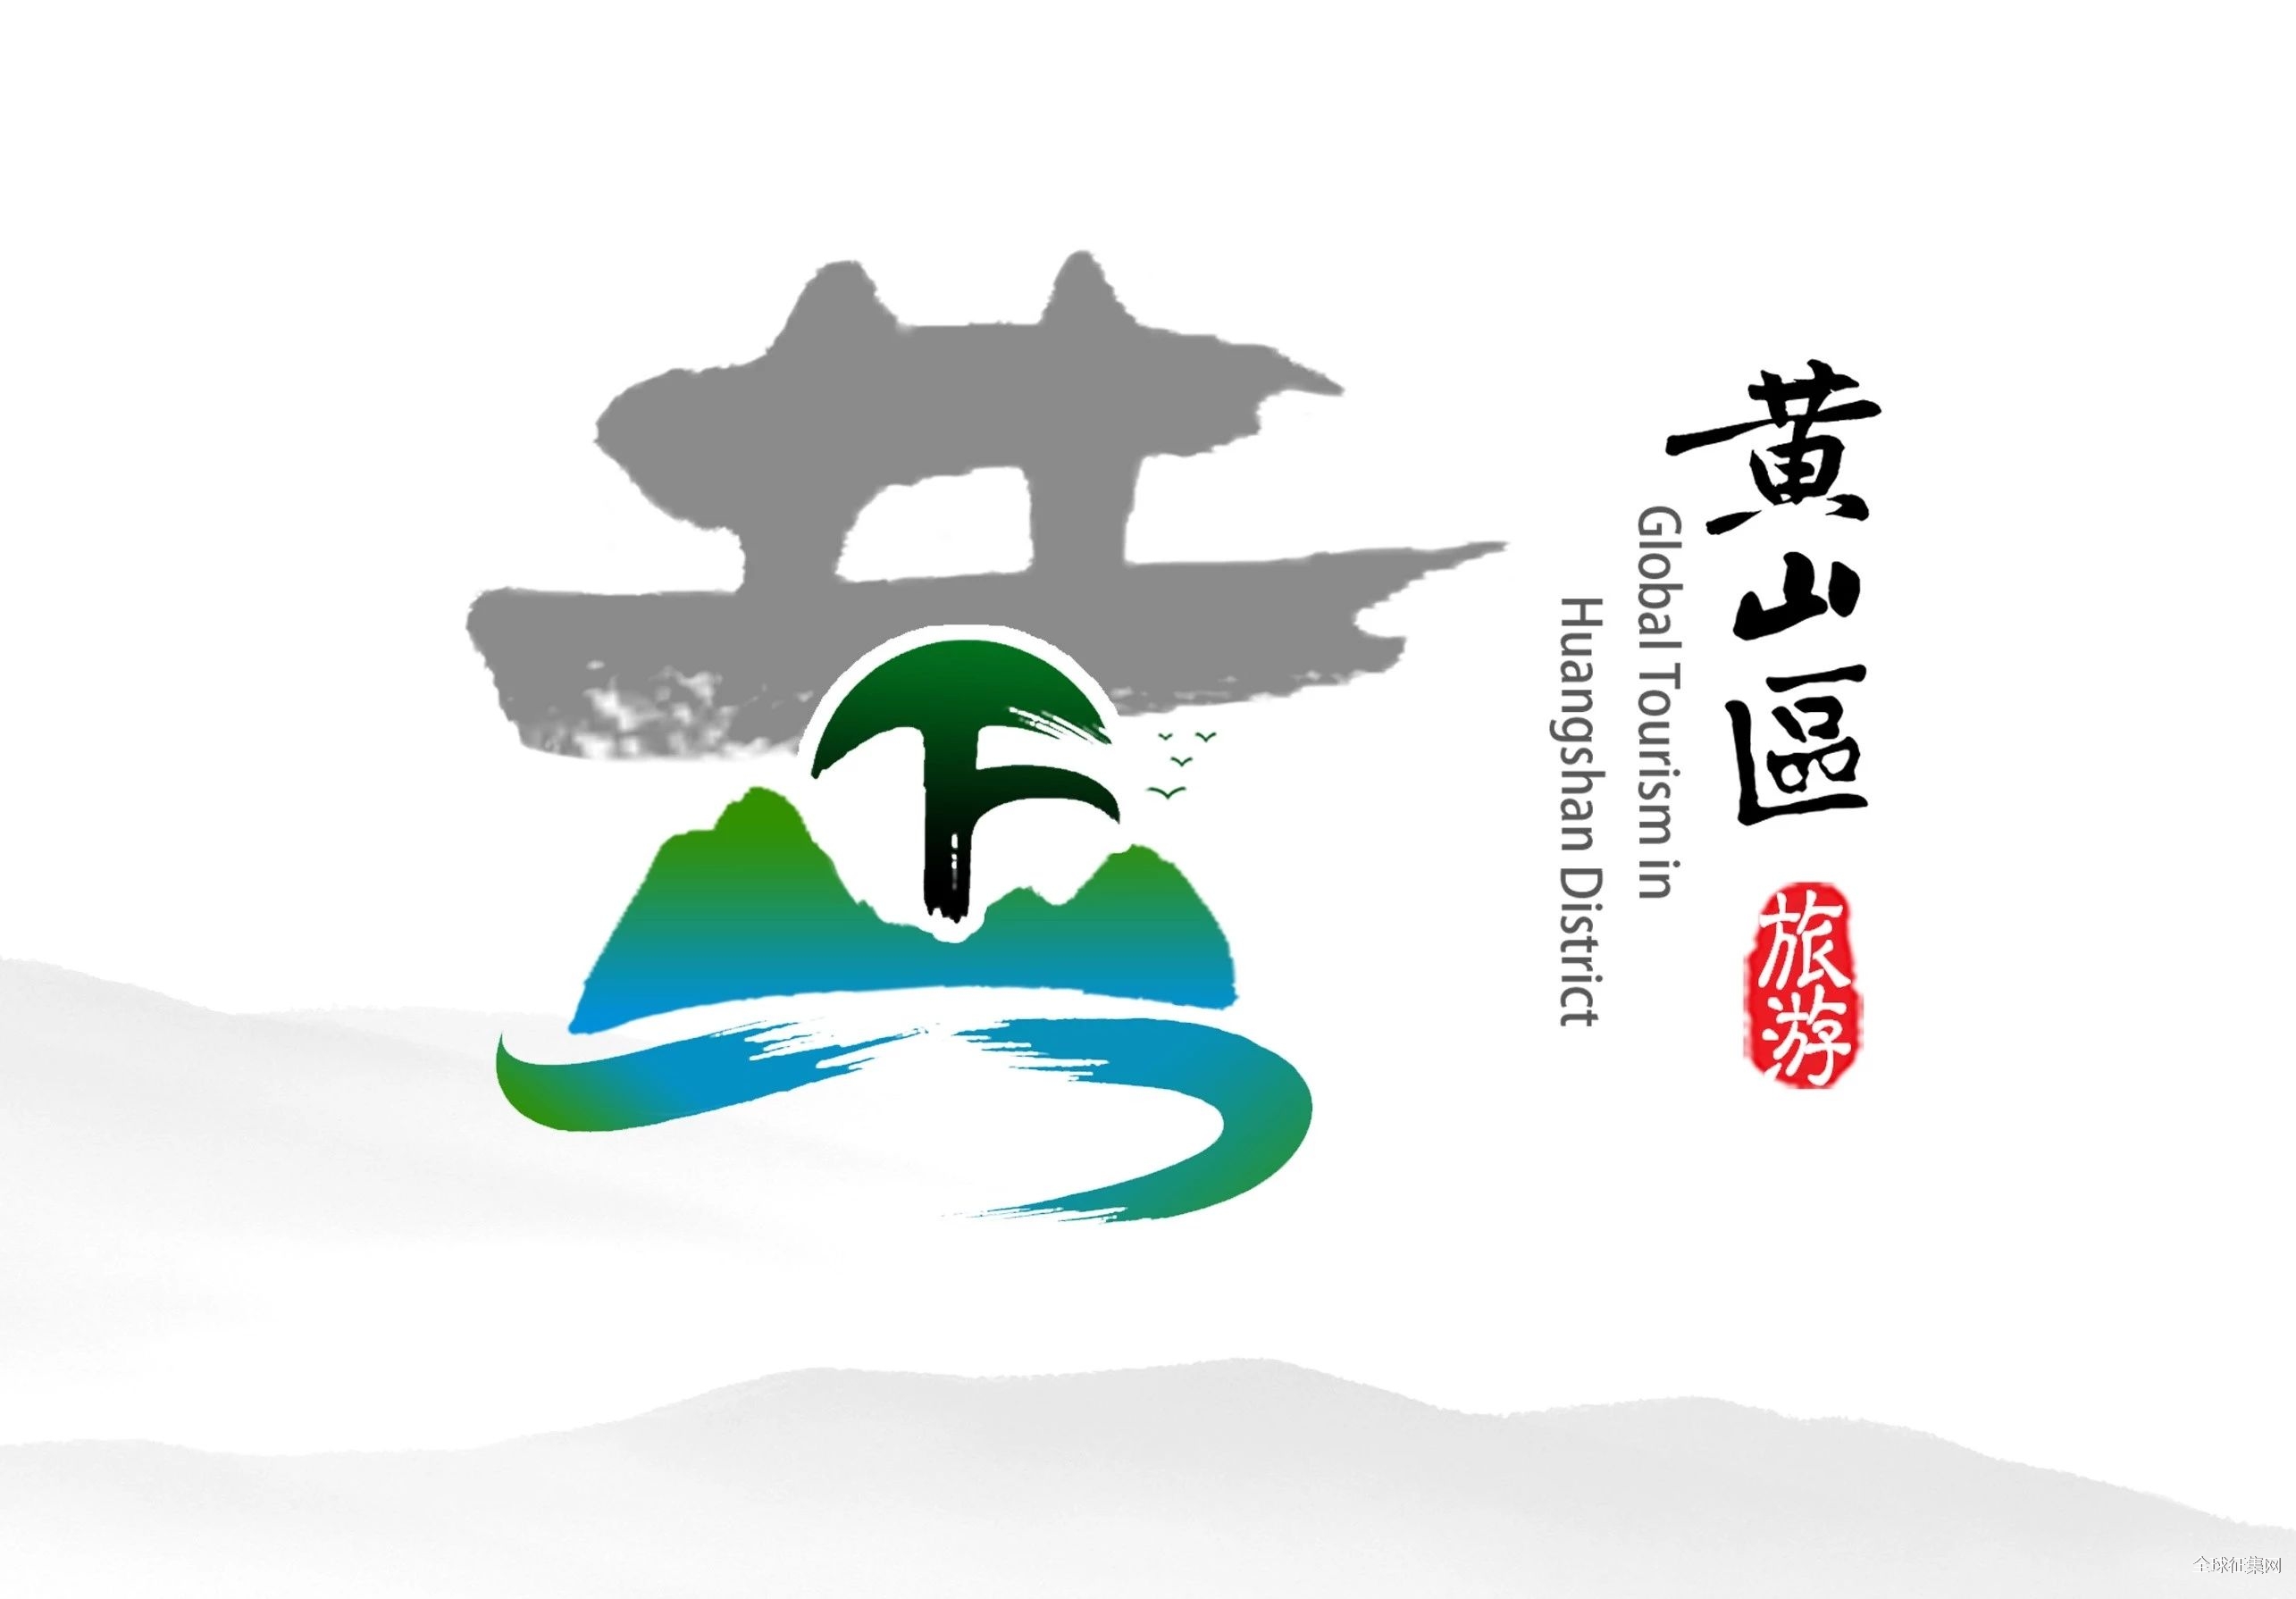 黄山区全域旅游宣传口号ip卡通形象logo标识征集投票正式启动